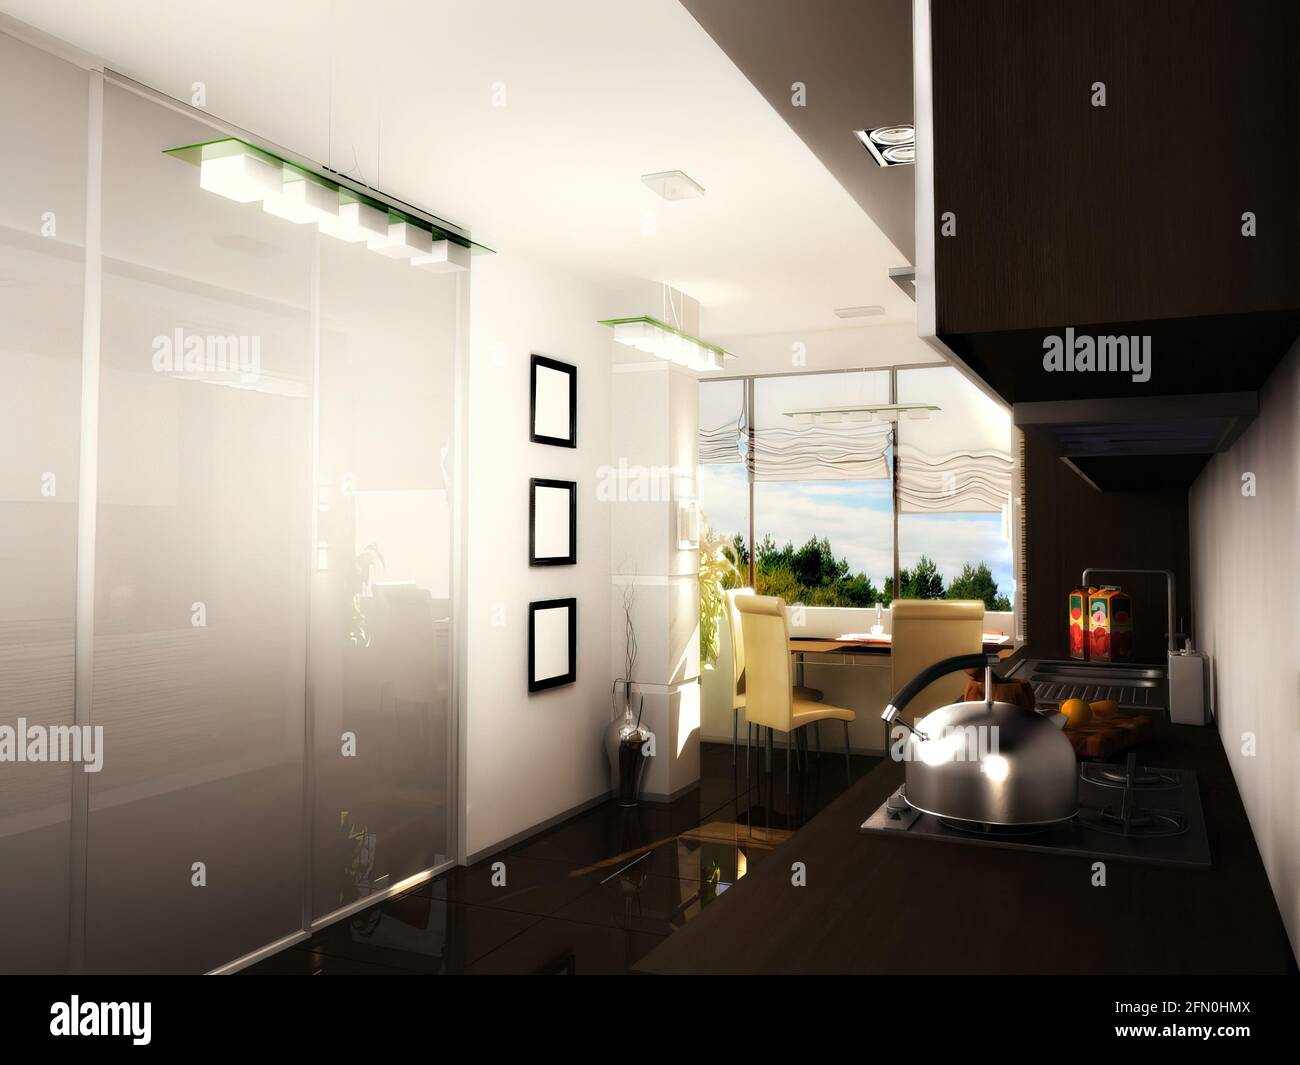 illustrazione 3d di una cucina moderna in un appartamento. Cucina con armadi scuri sotto e armadi chiari in cima. Foto Stock